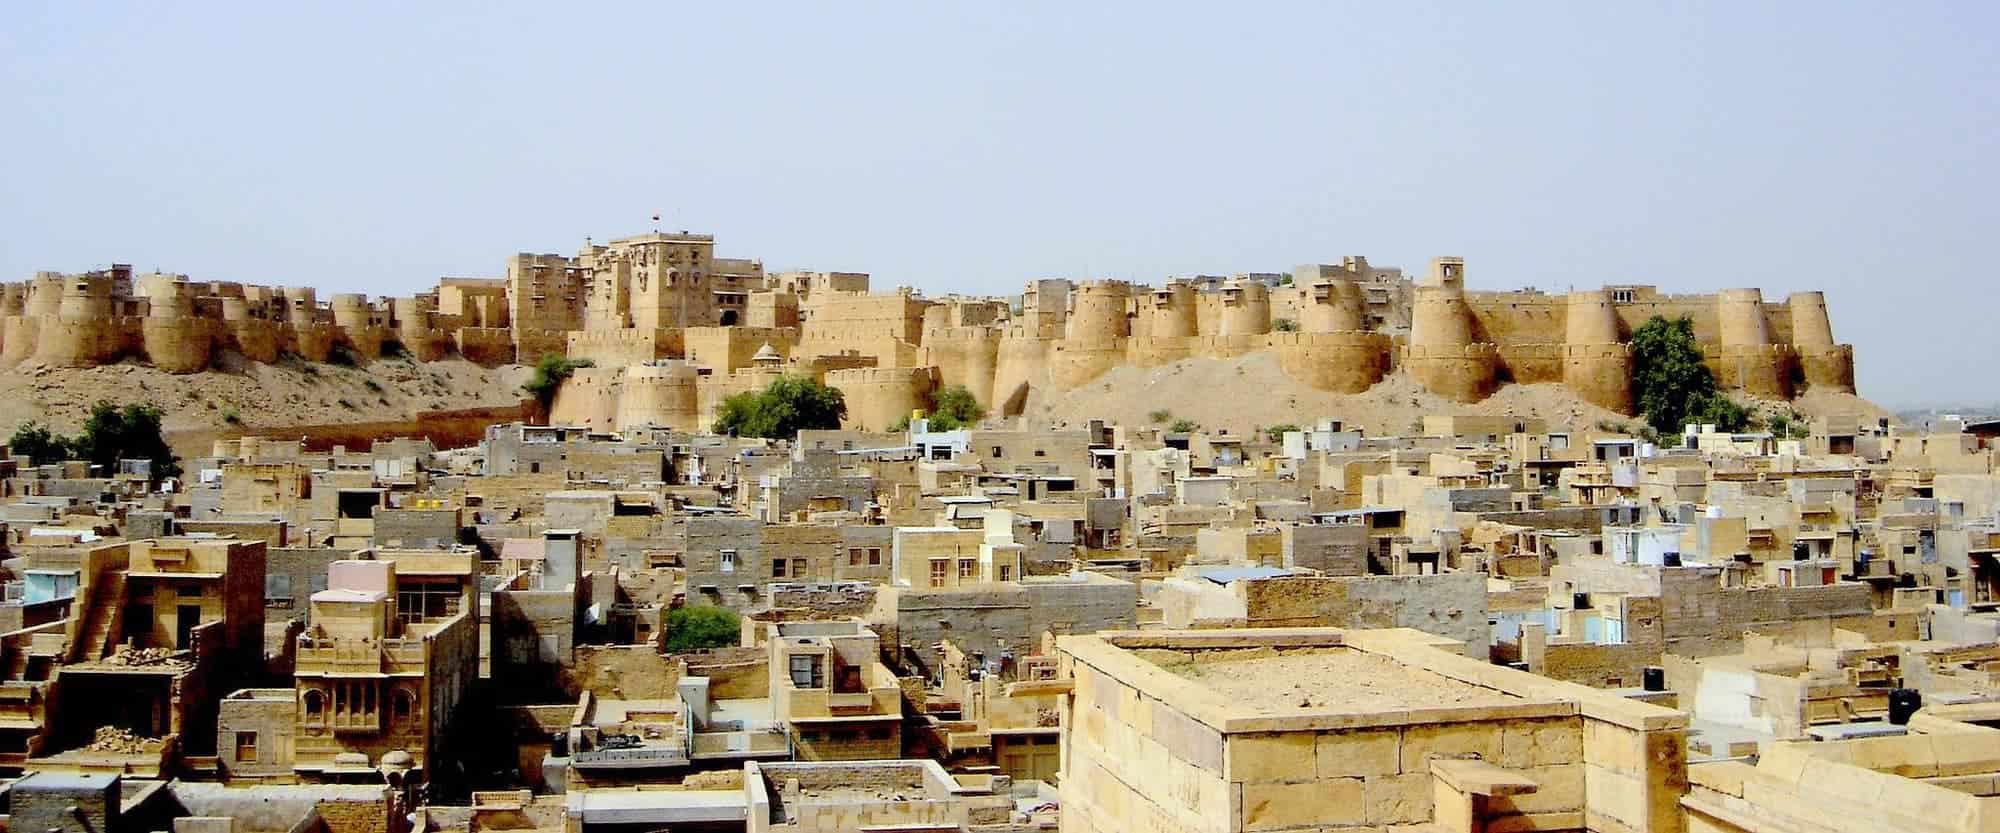 जैसलमेर दुर्ग Jaisalmer Fort